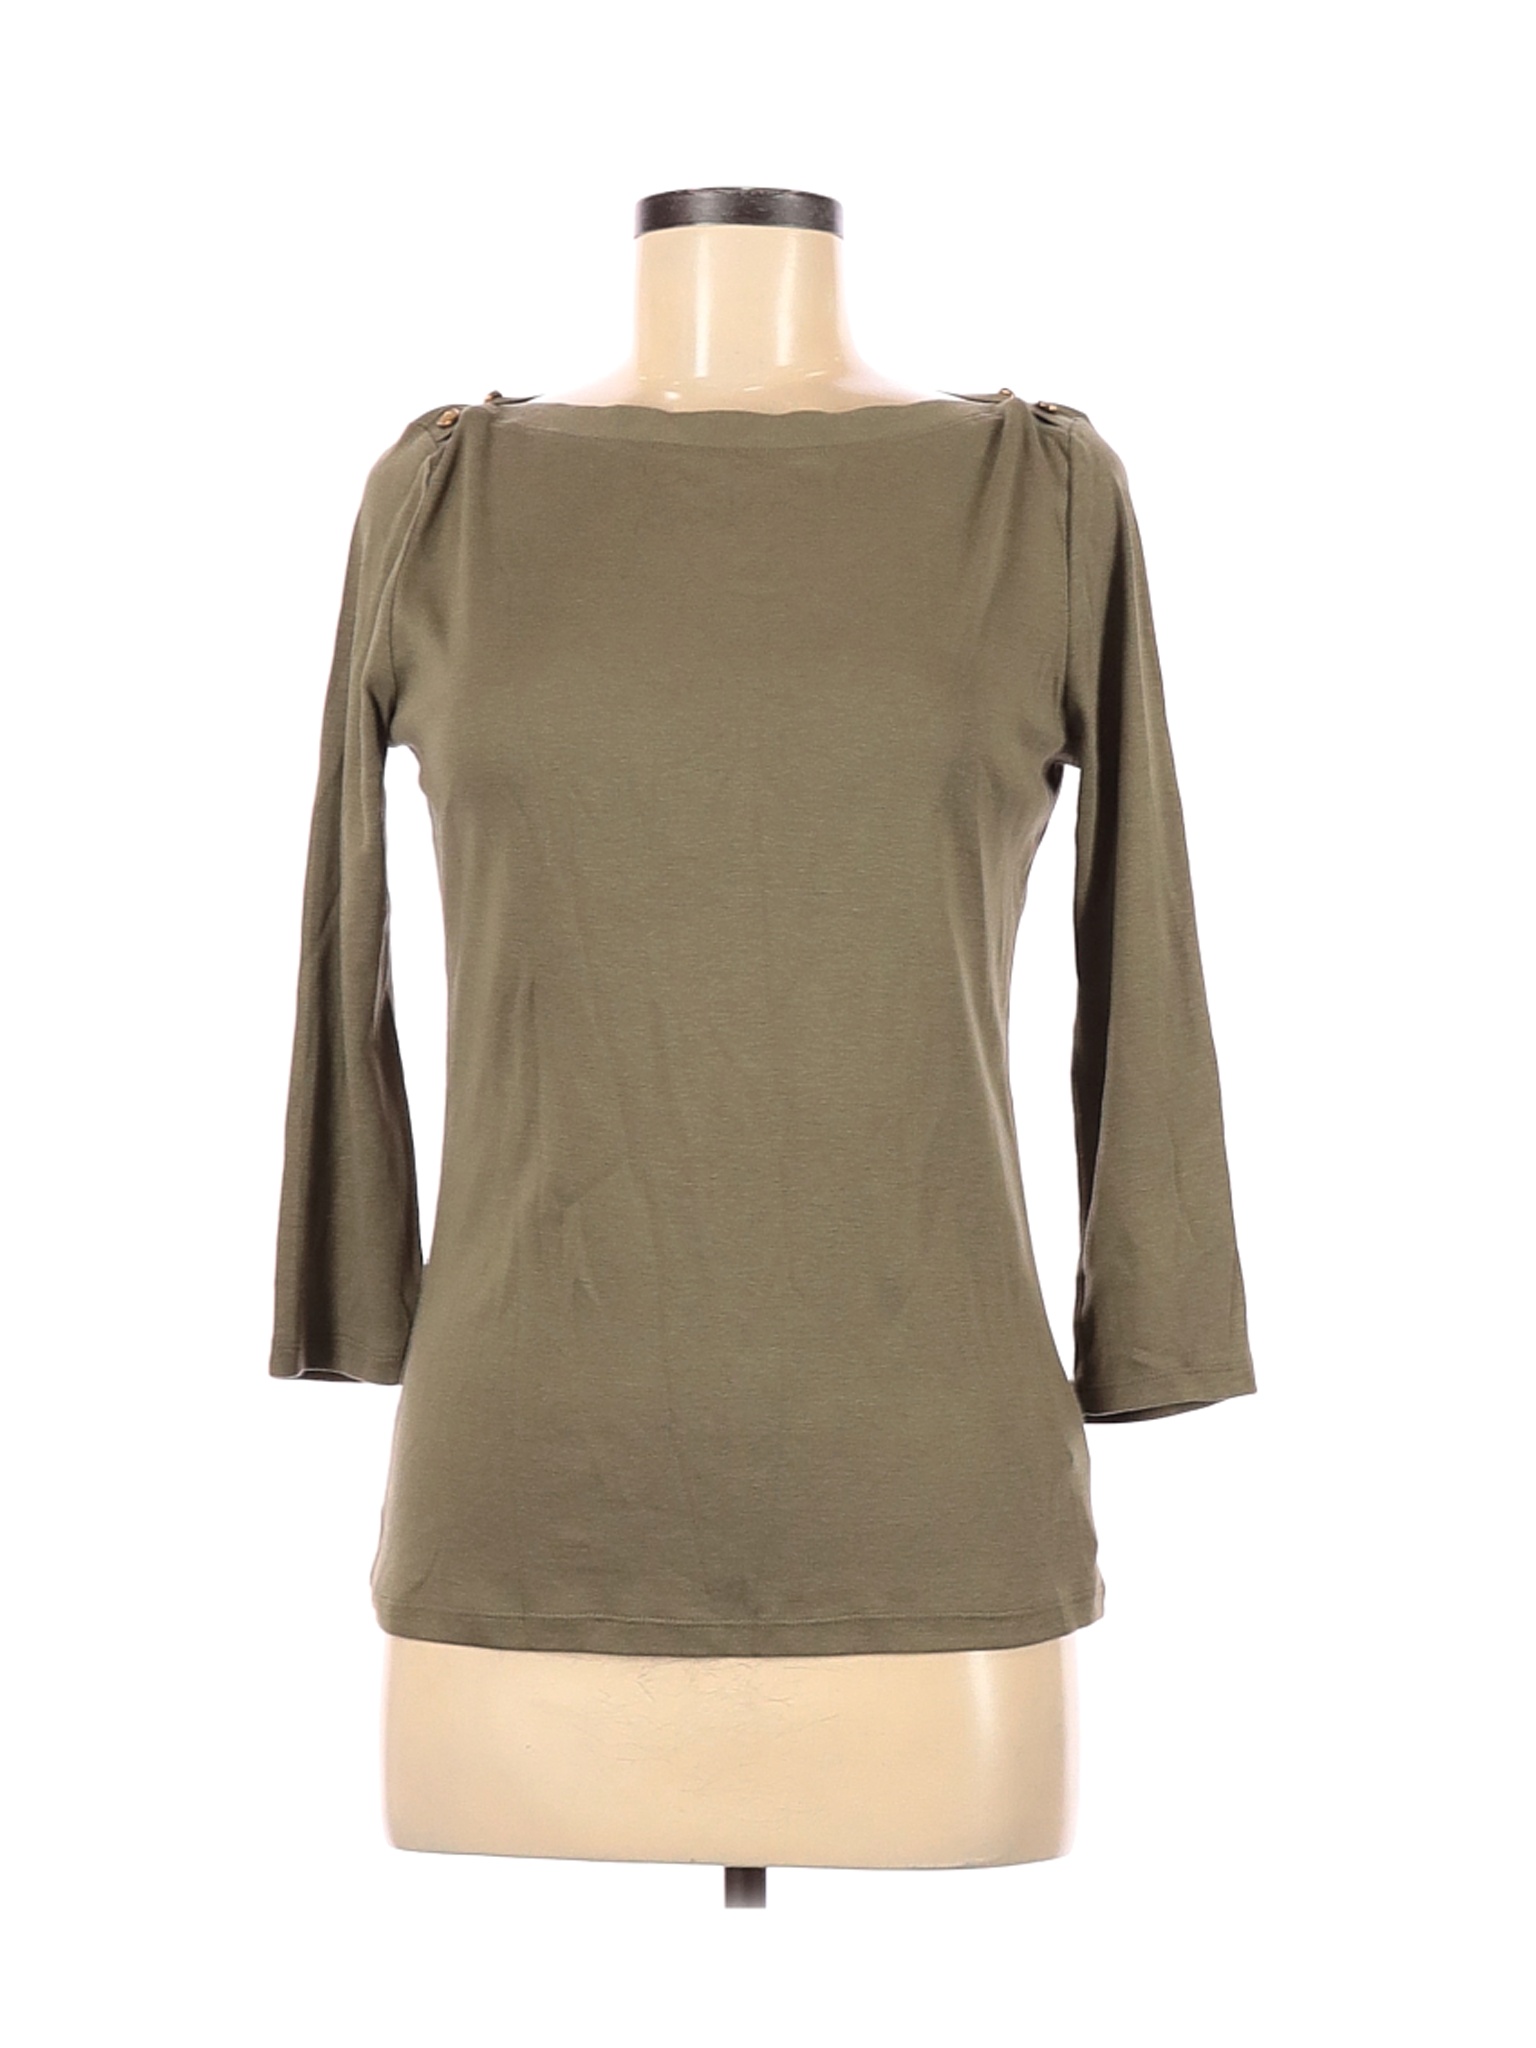 Lauren by Ralph Lauren Women Green 3/4 Sleeve T-Shirt M | eBay